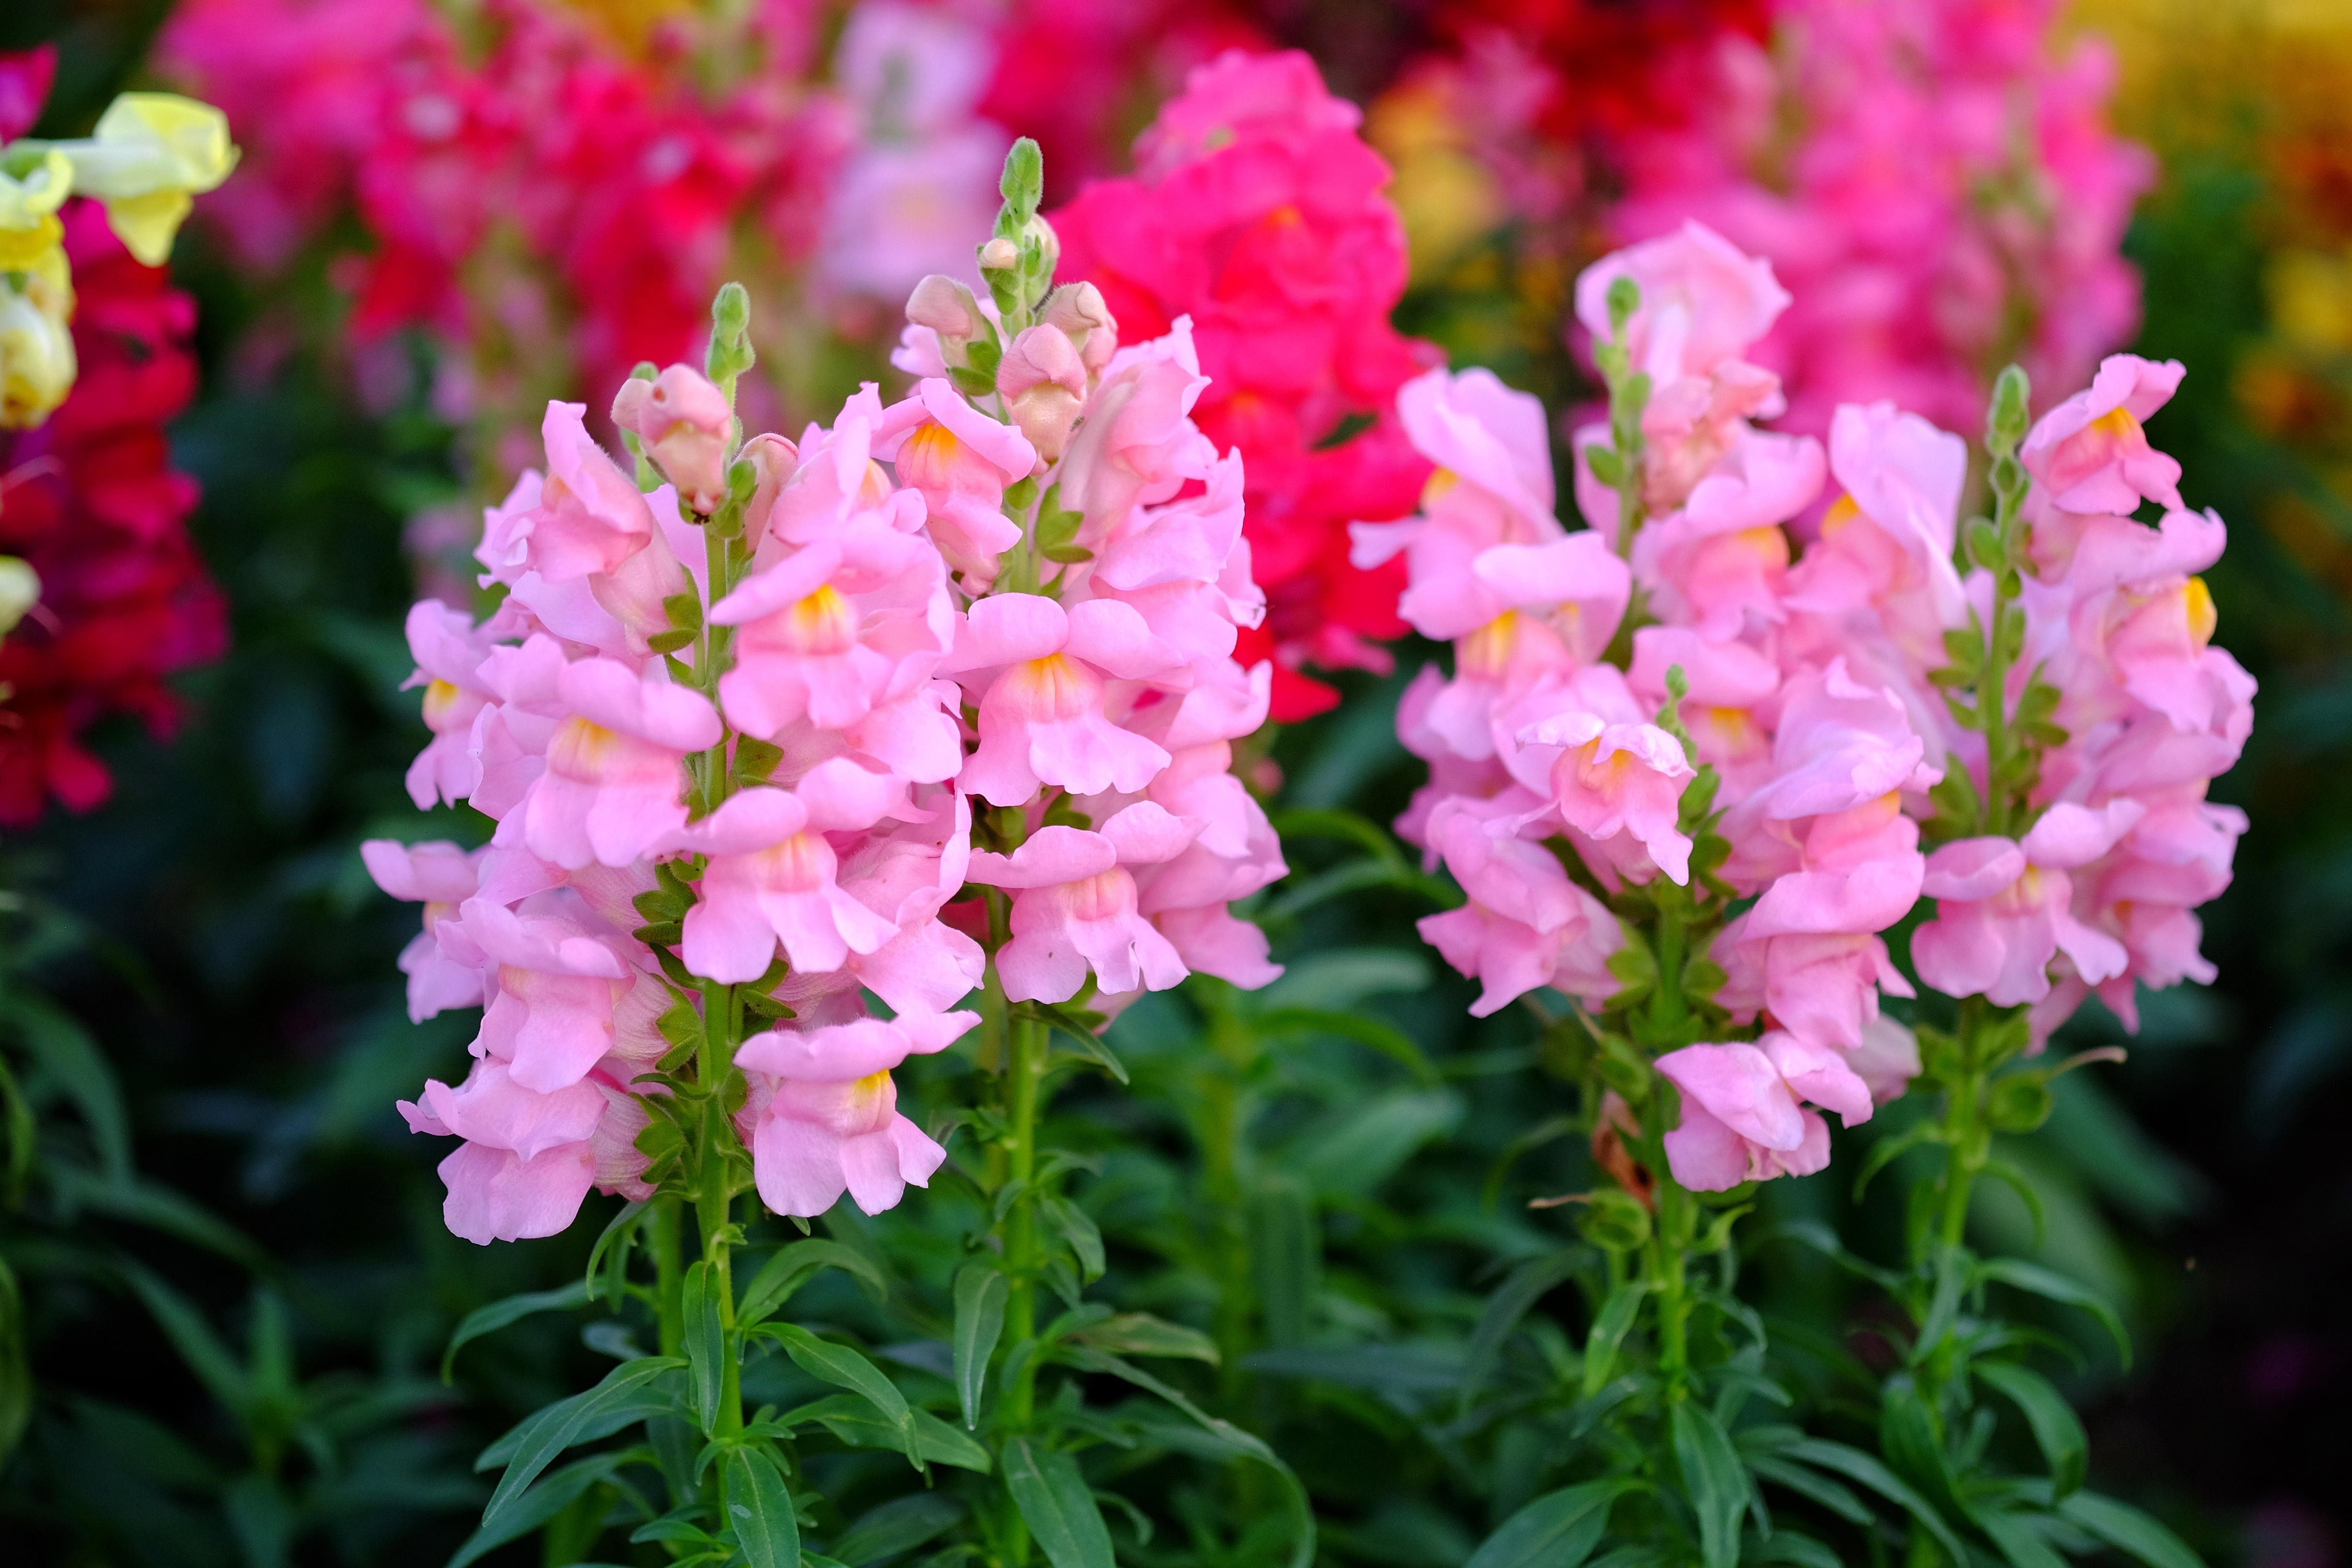 Le muflier, une fleur de prairie facile à cultiver ! Copyright (c) 2020 Nualanong/Shutterstock.